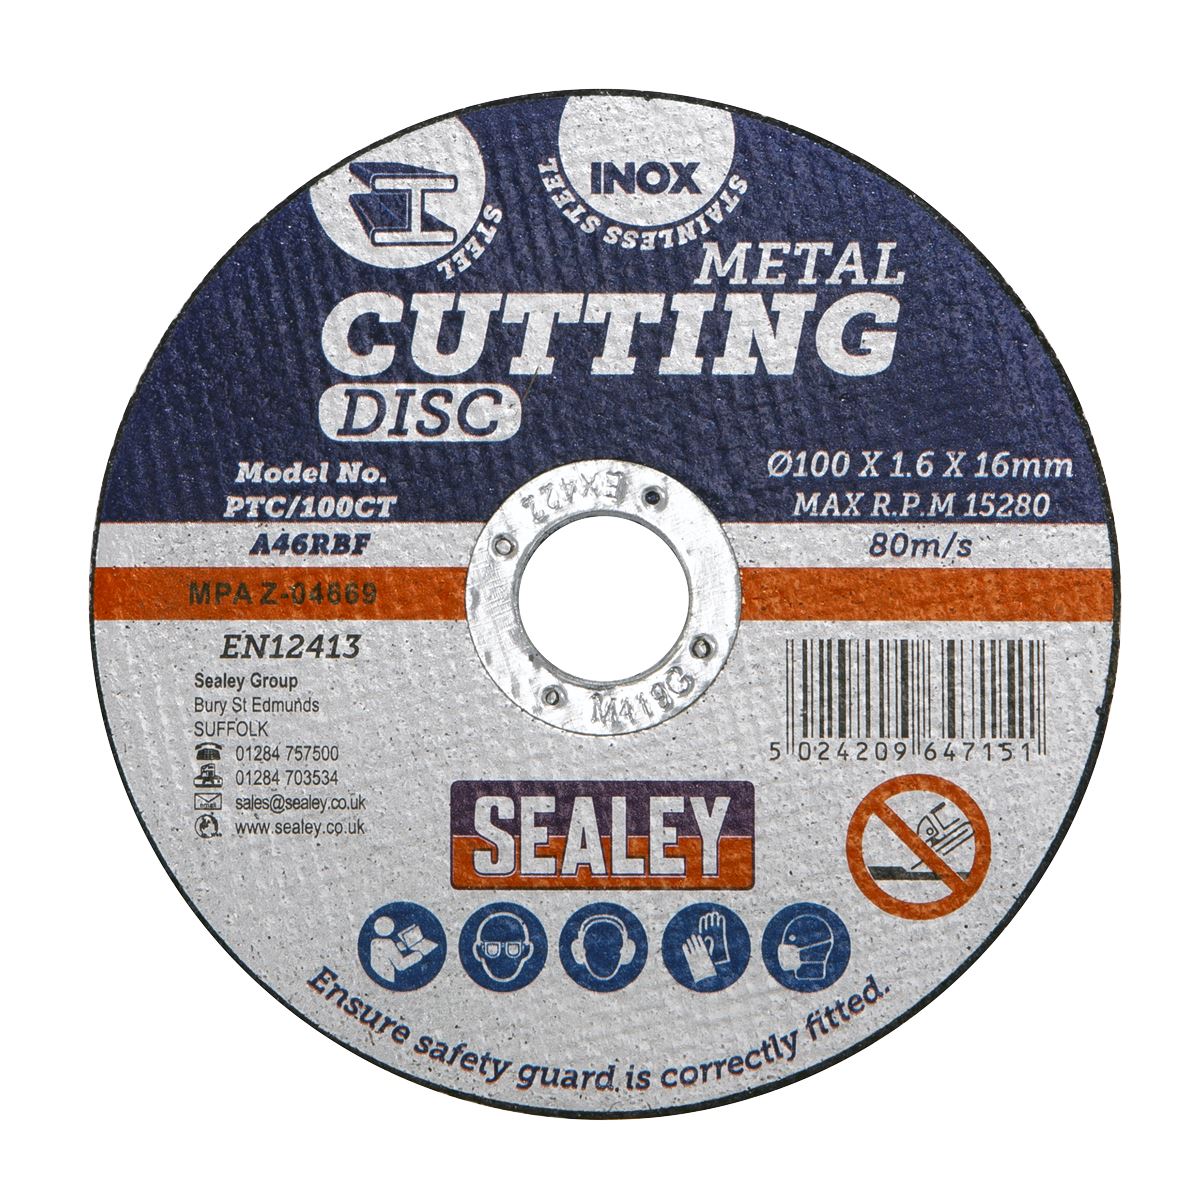 Sealey Cutting Disc Ø100 x 1.6mm Ø16mm Bore